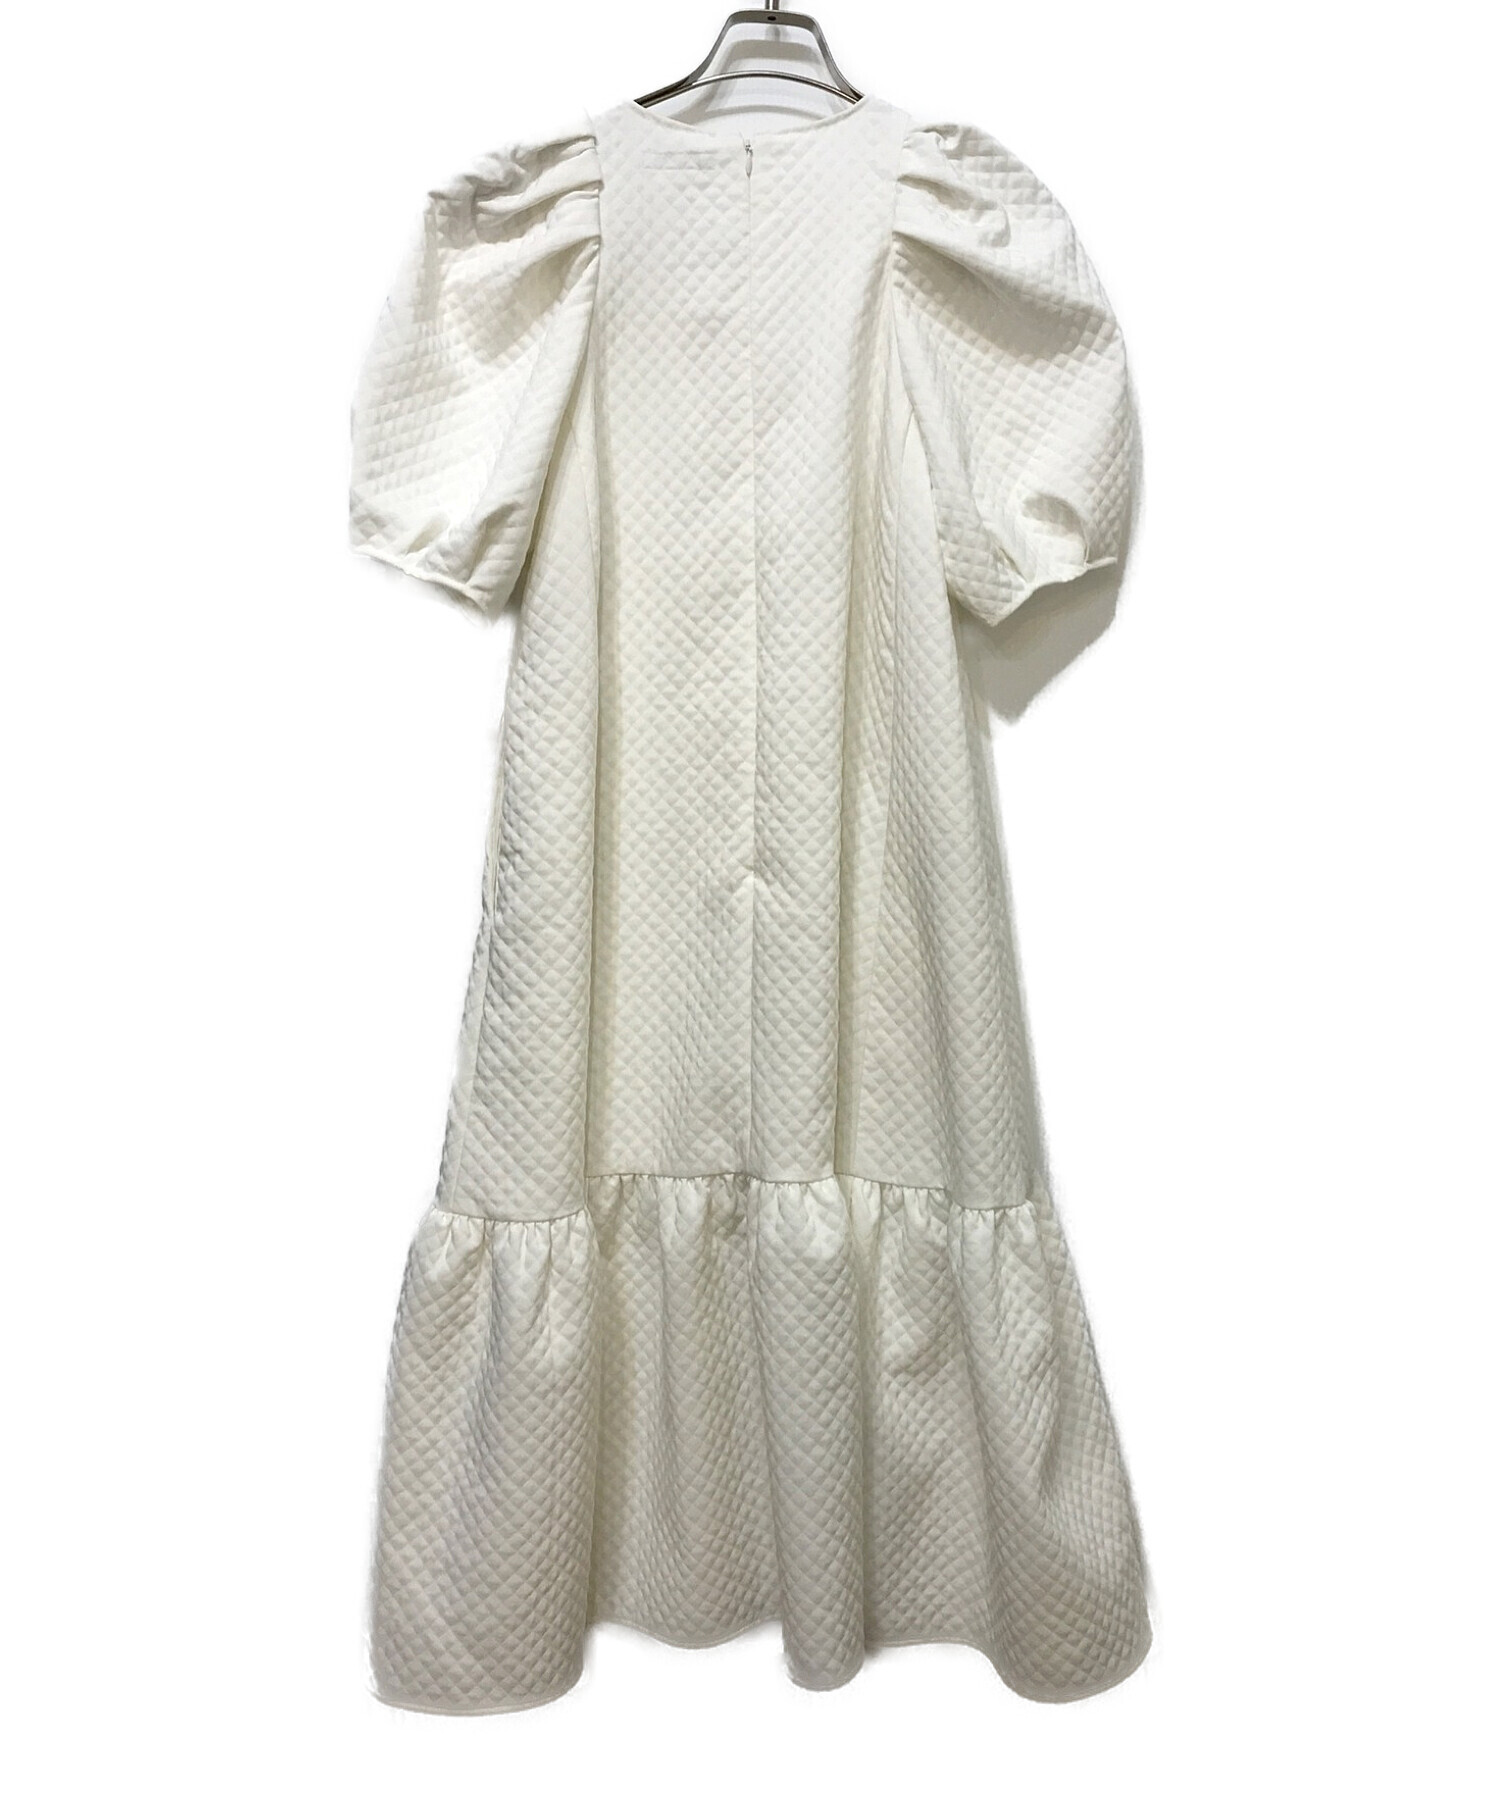 DOUBLE STANDARD CLOTHING (ダブルスタンダードクロージング) マトラッセ ジャガードフレアワンピース ホワイト サイズ:38